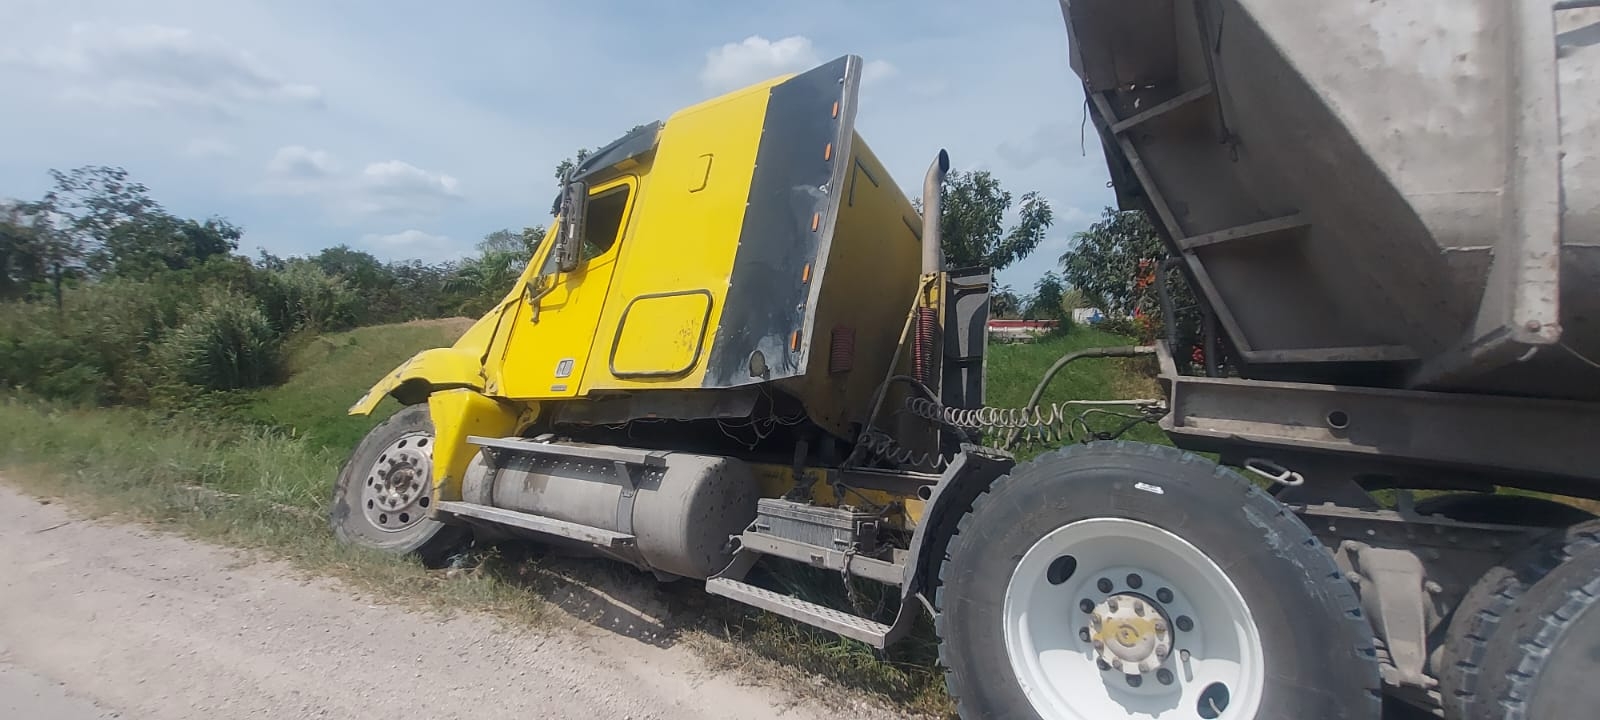 Camionero da un 'volantazo' para no chocar contra otra unidad en la vía Escárcega-Villahermosa